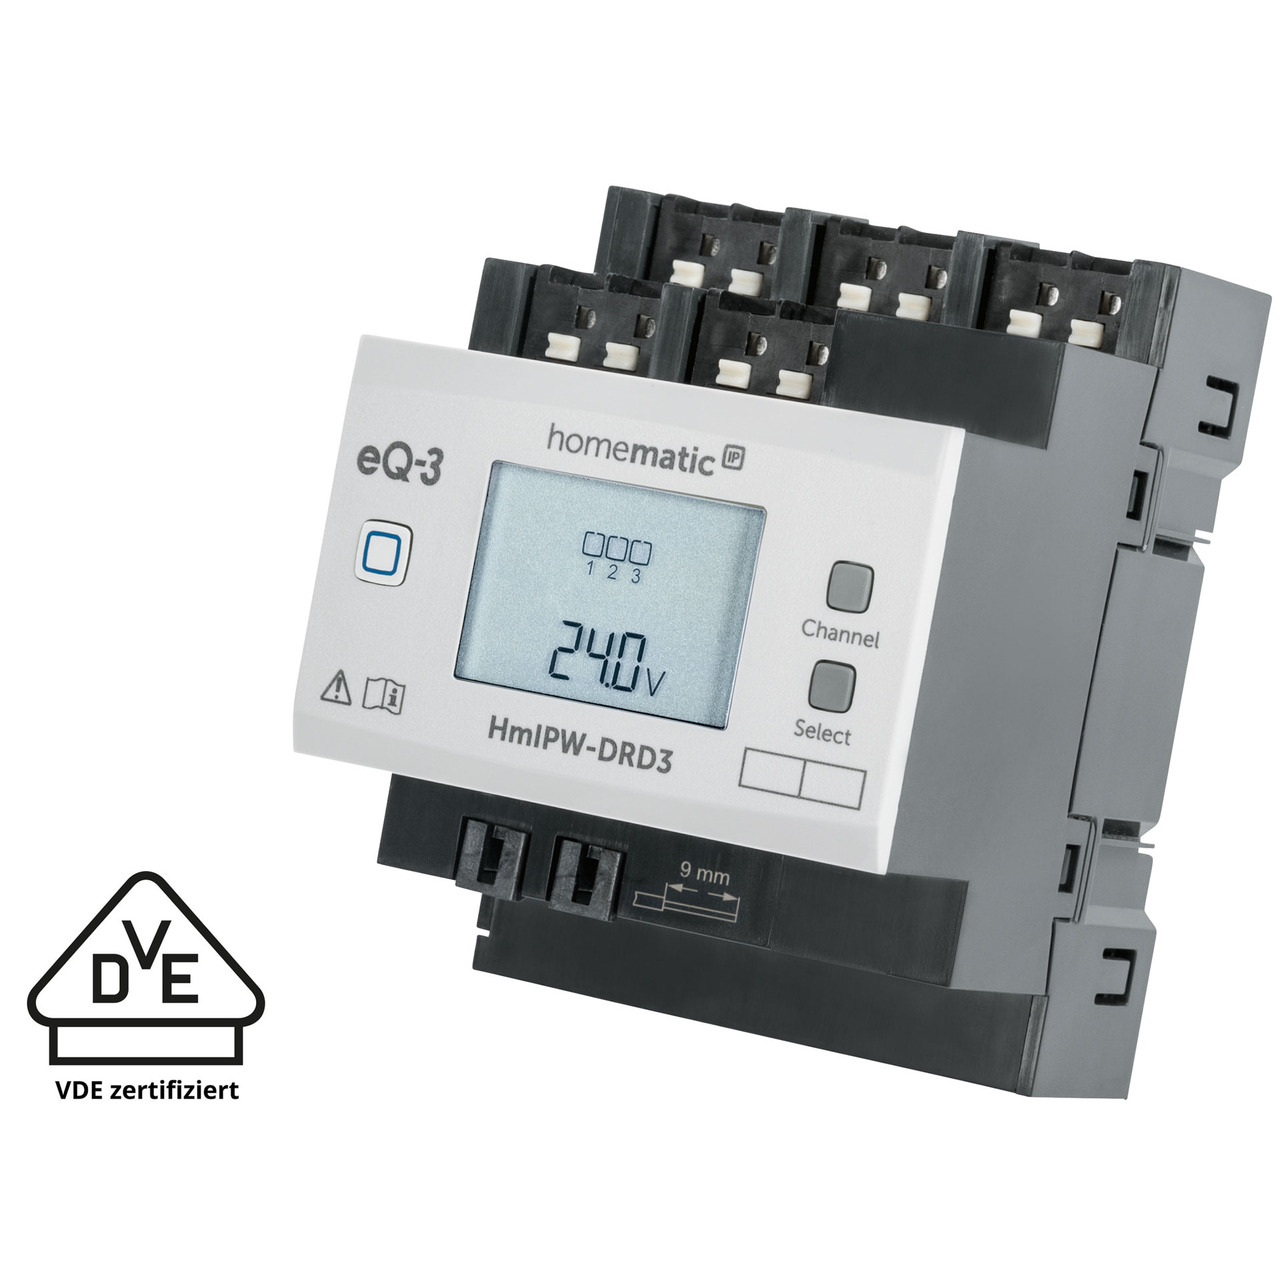 Homematic IP Wired Smart Home 3-fach-Dimmaktor HmIPW-DRD3- VDE zertifiziert